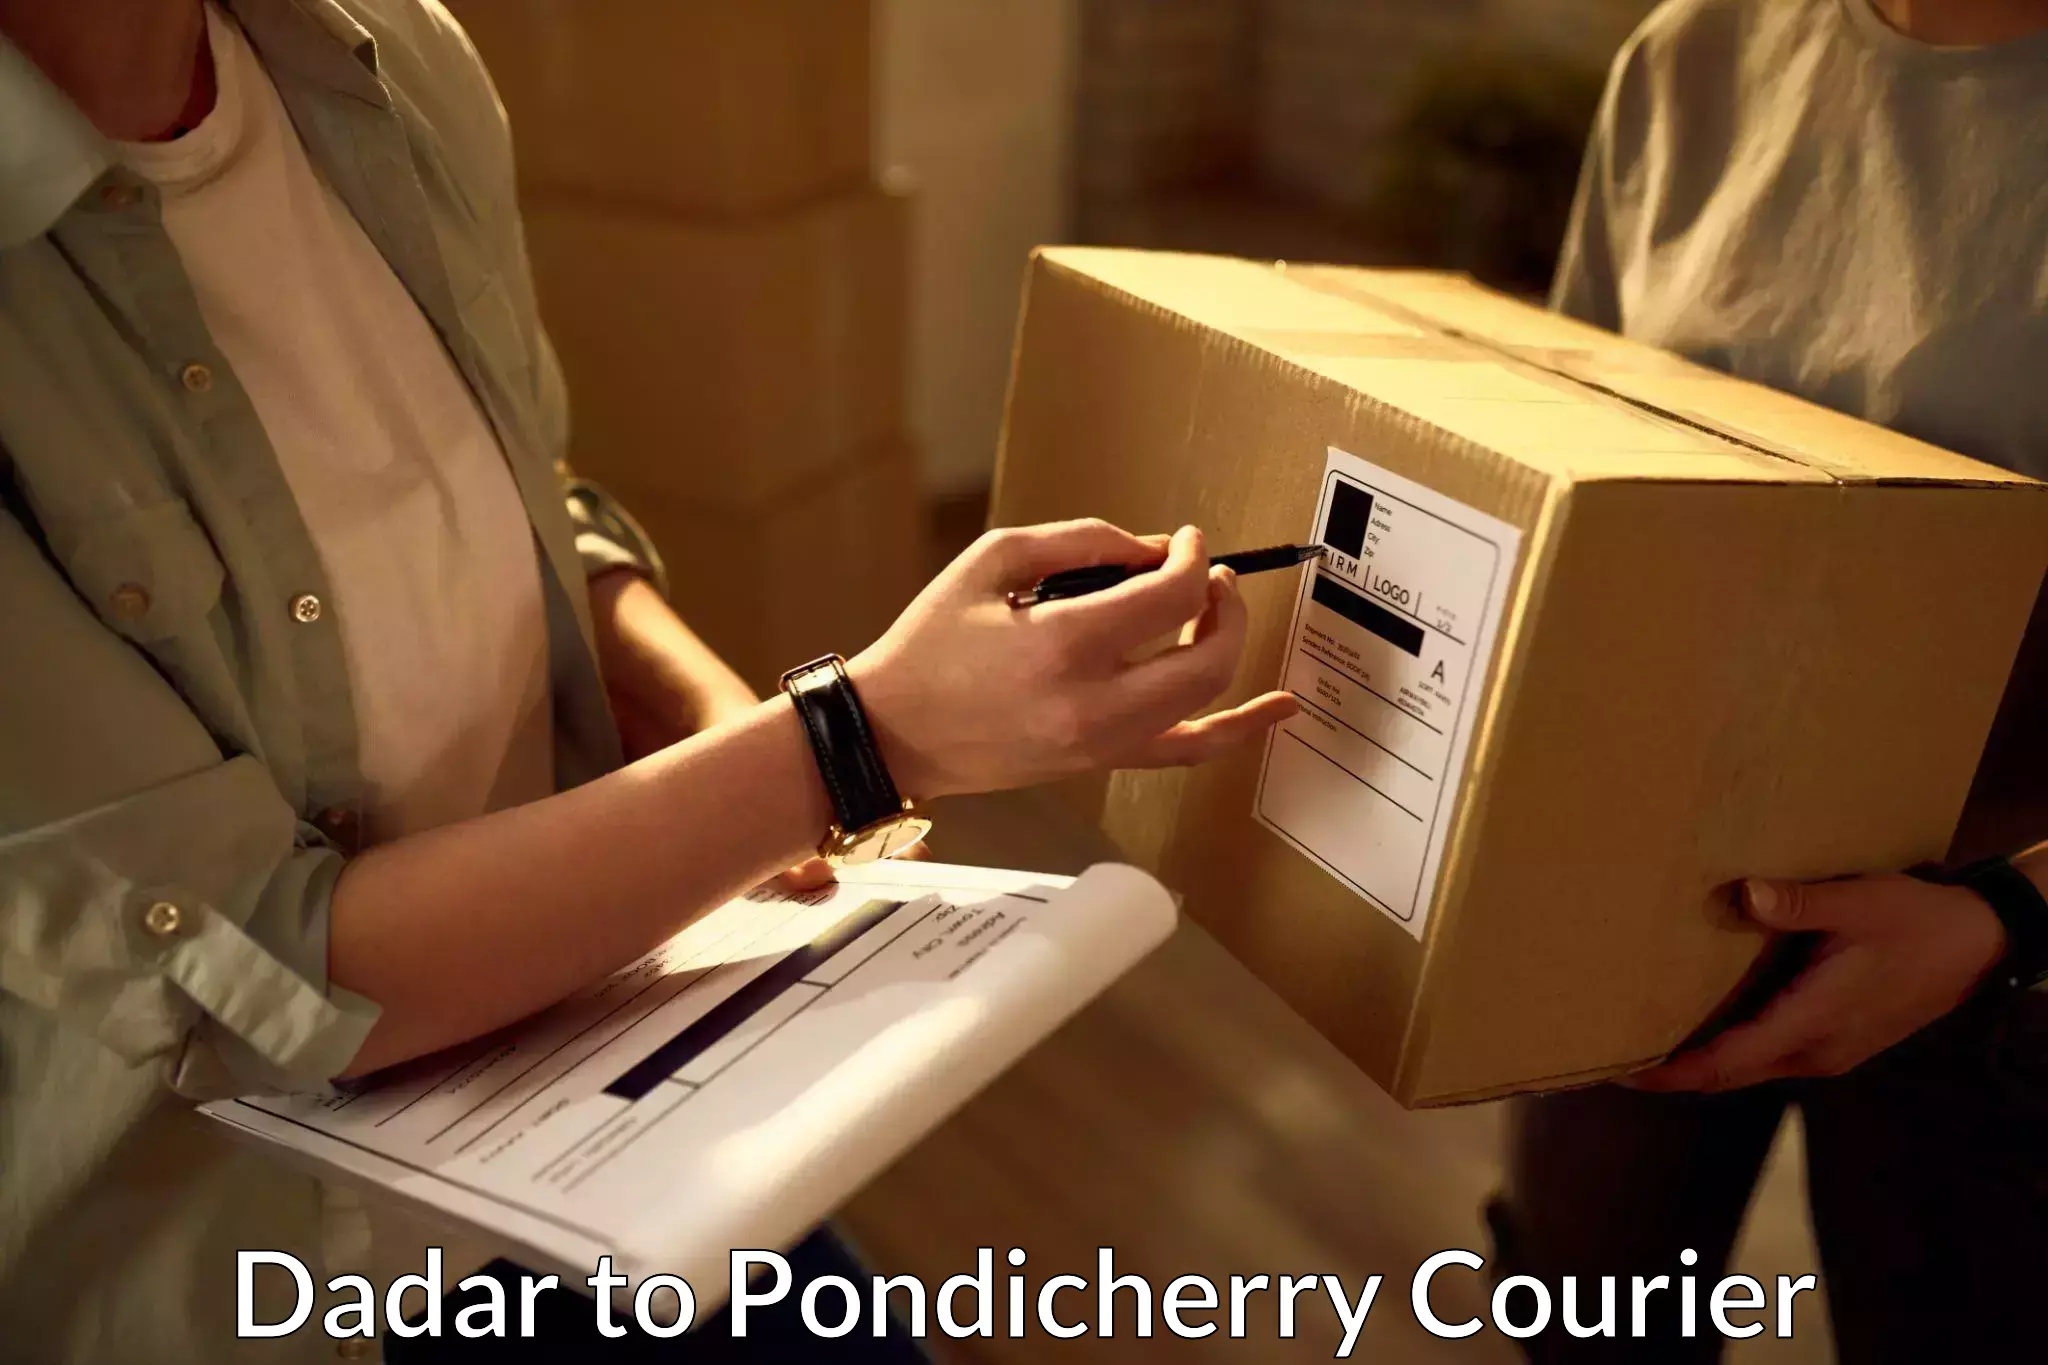 User-friendly courier app Dadar to Pondicherry